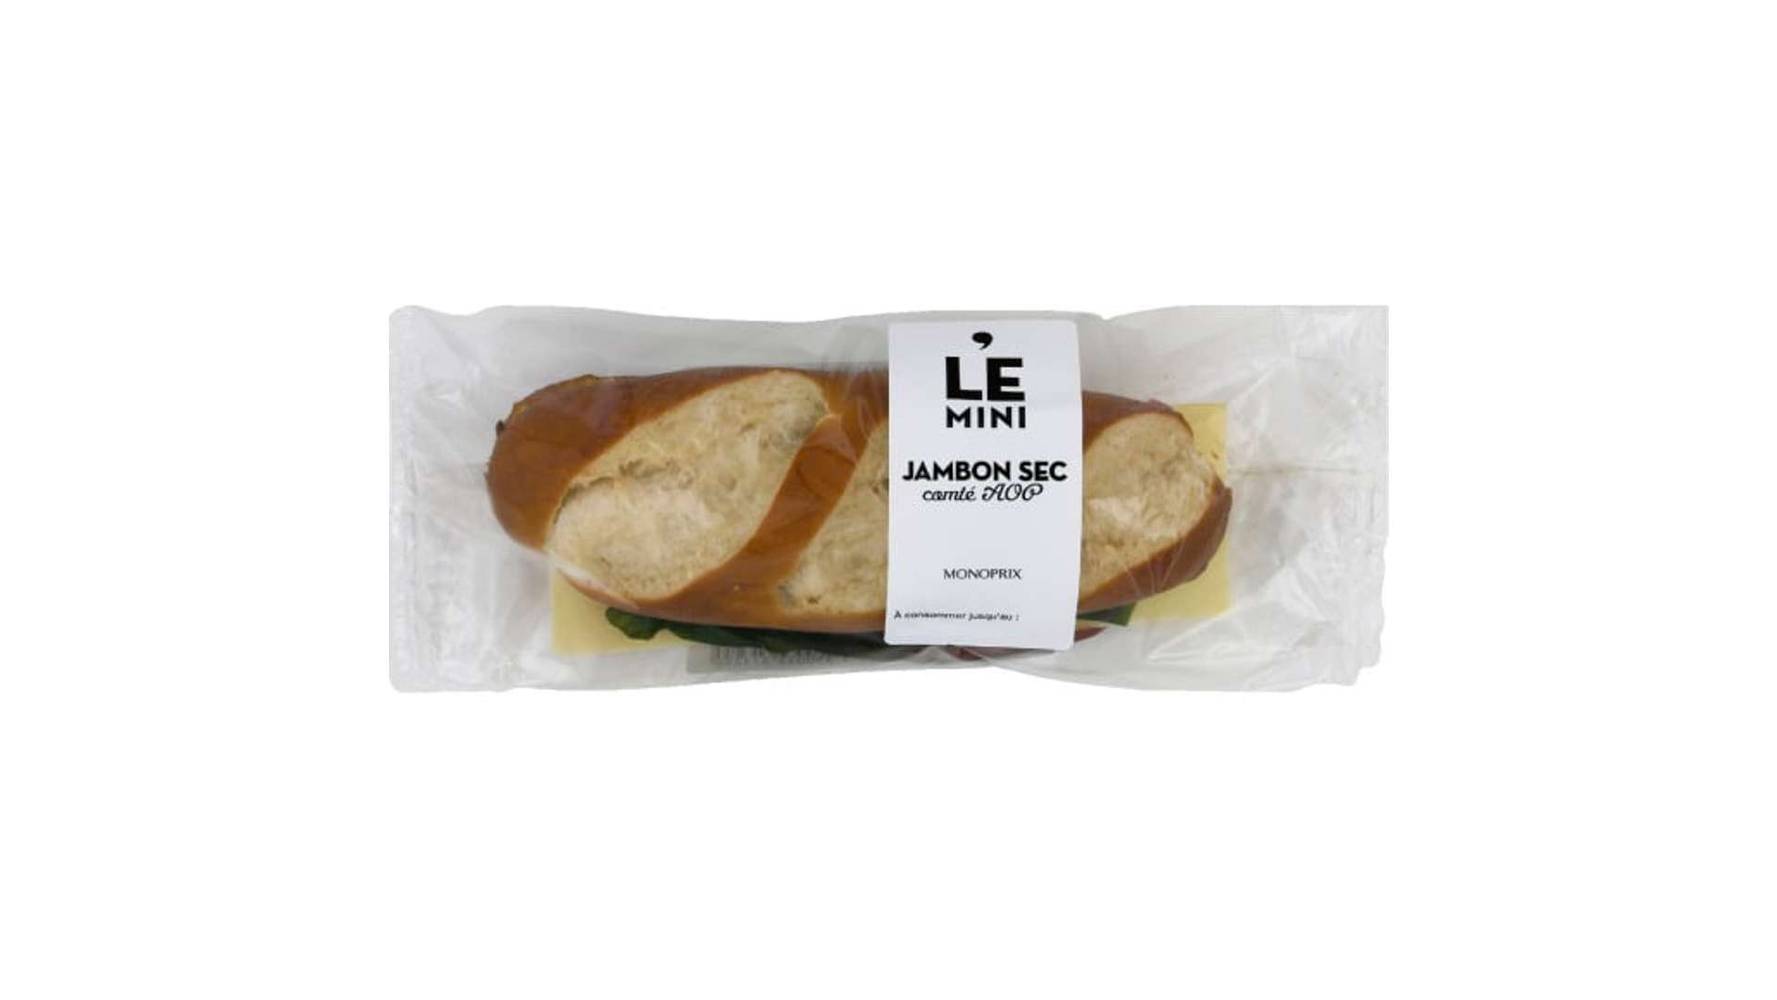 Monoprix Sandwich Jambon forêt noire emmental - Le Mini Le sandwich de 115 g